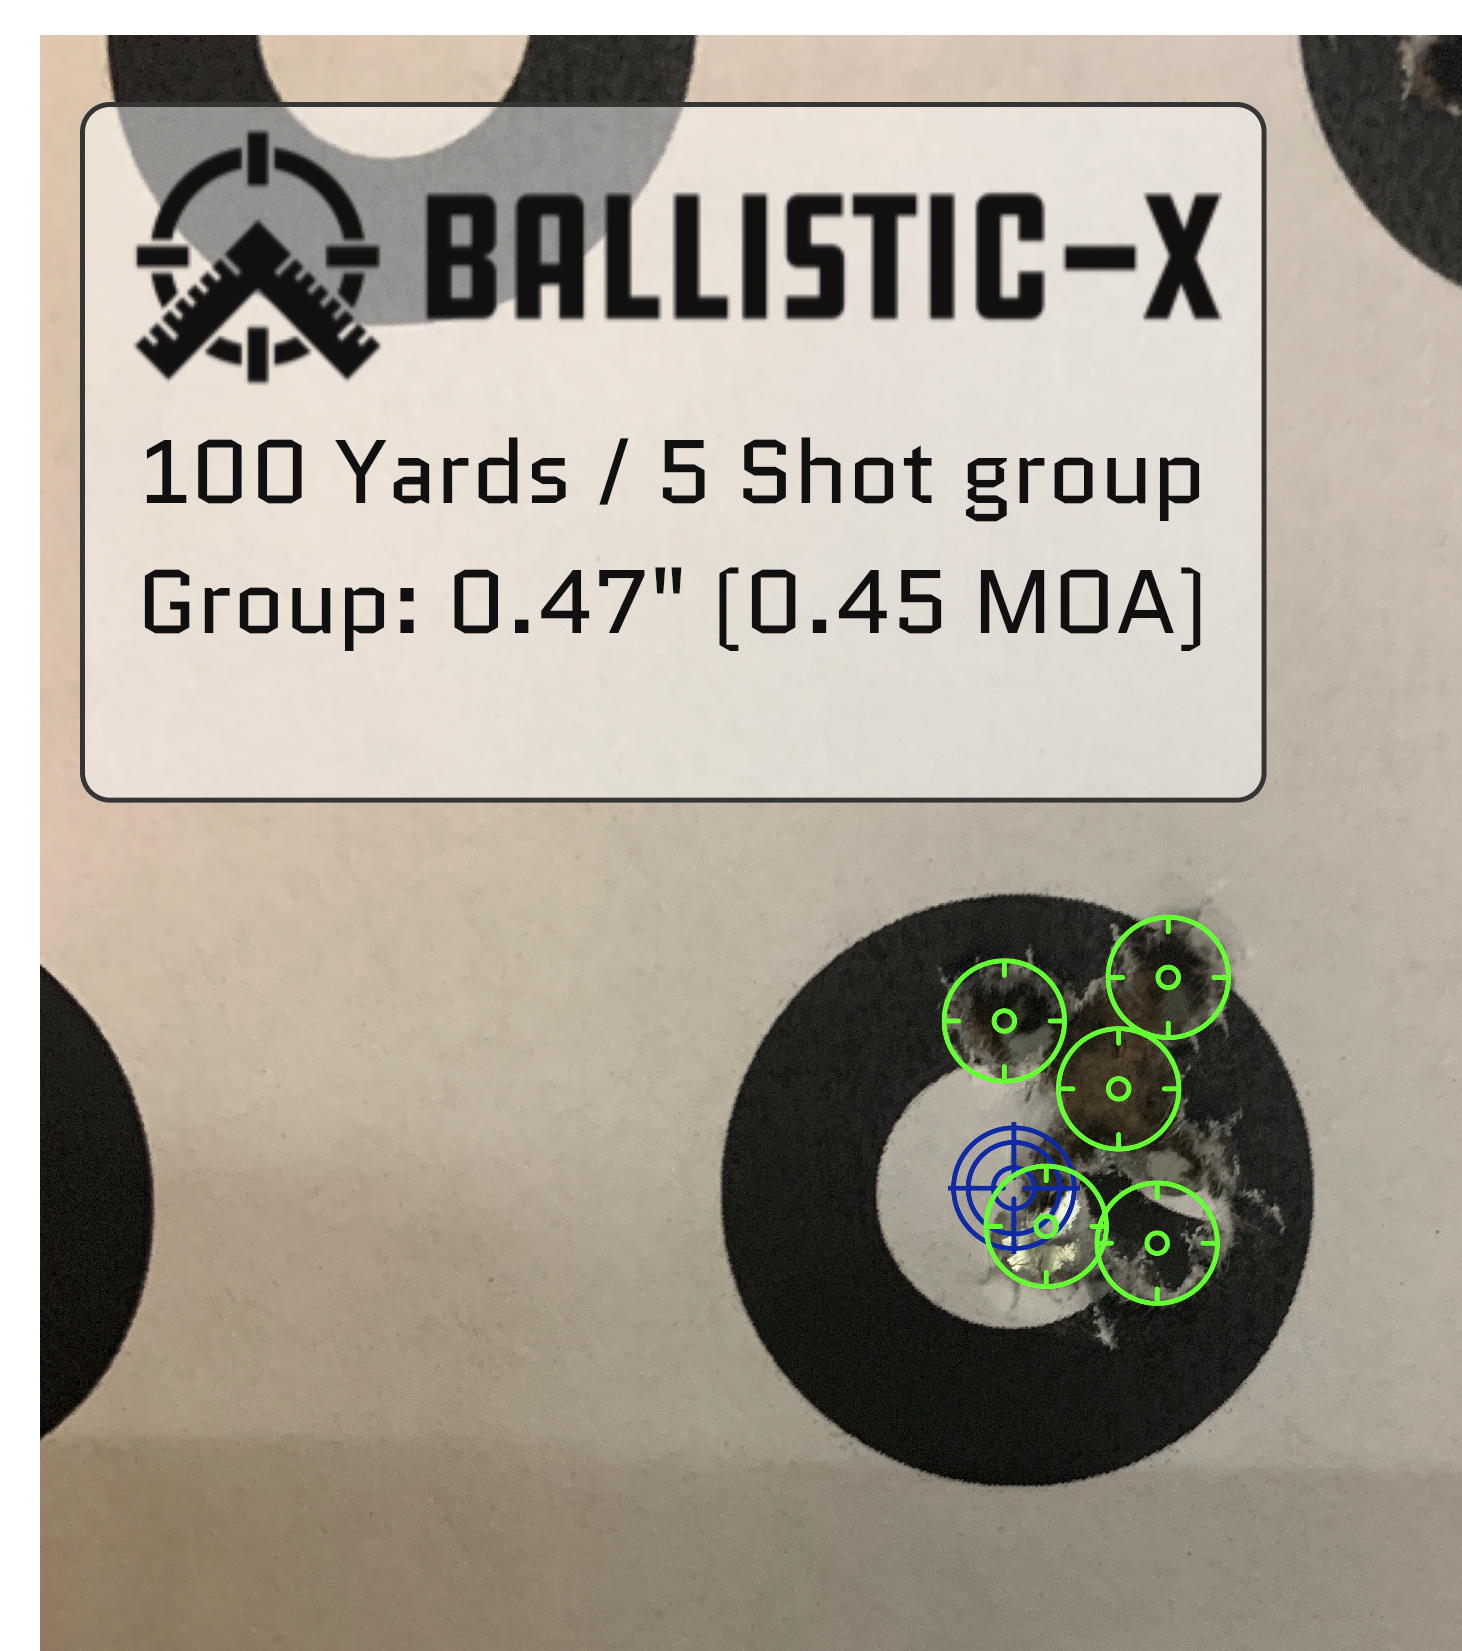 Ballistic-X-Export-2020-05-29 11:42:11.899906.png